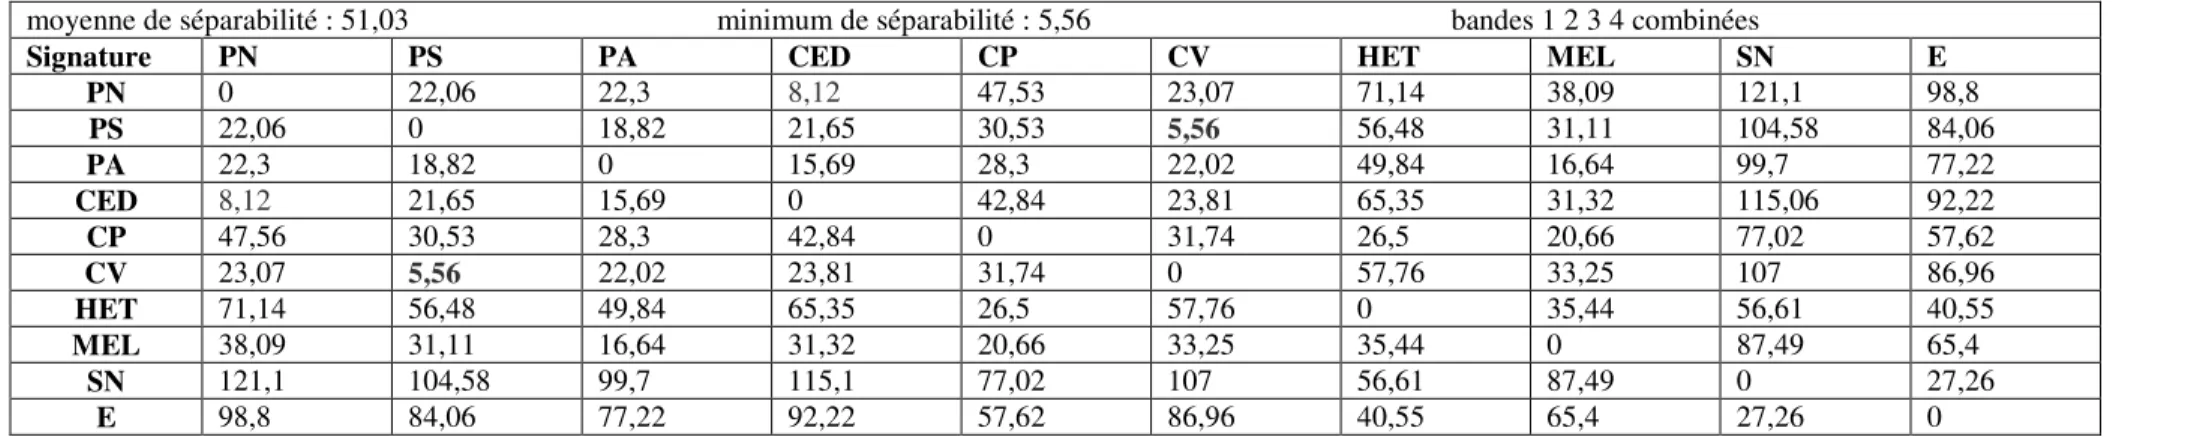 Tableau 9.  Matrice de séparabilité basée sur les distances spectrales euclidiennes - R 10 m 